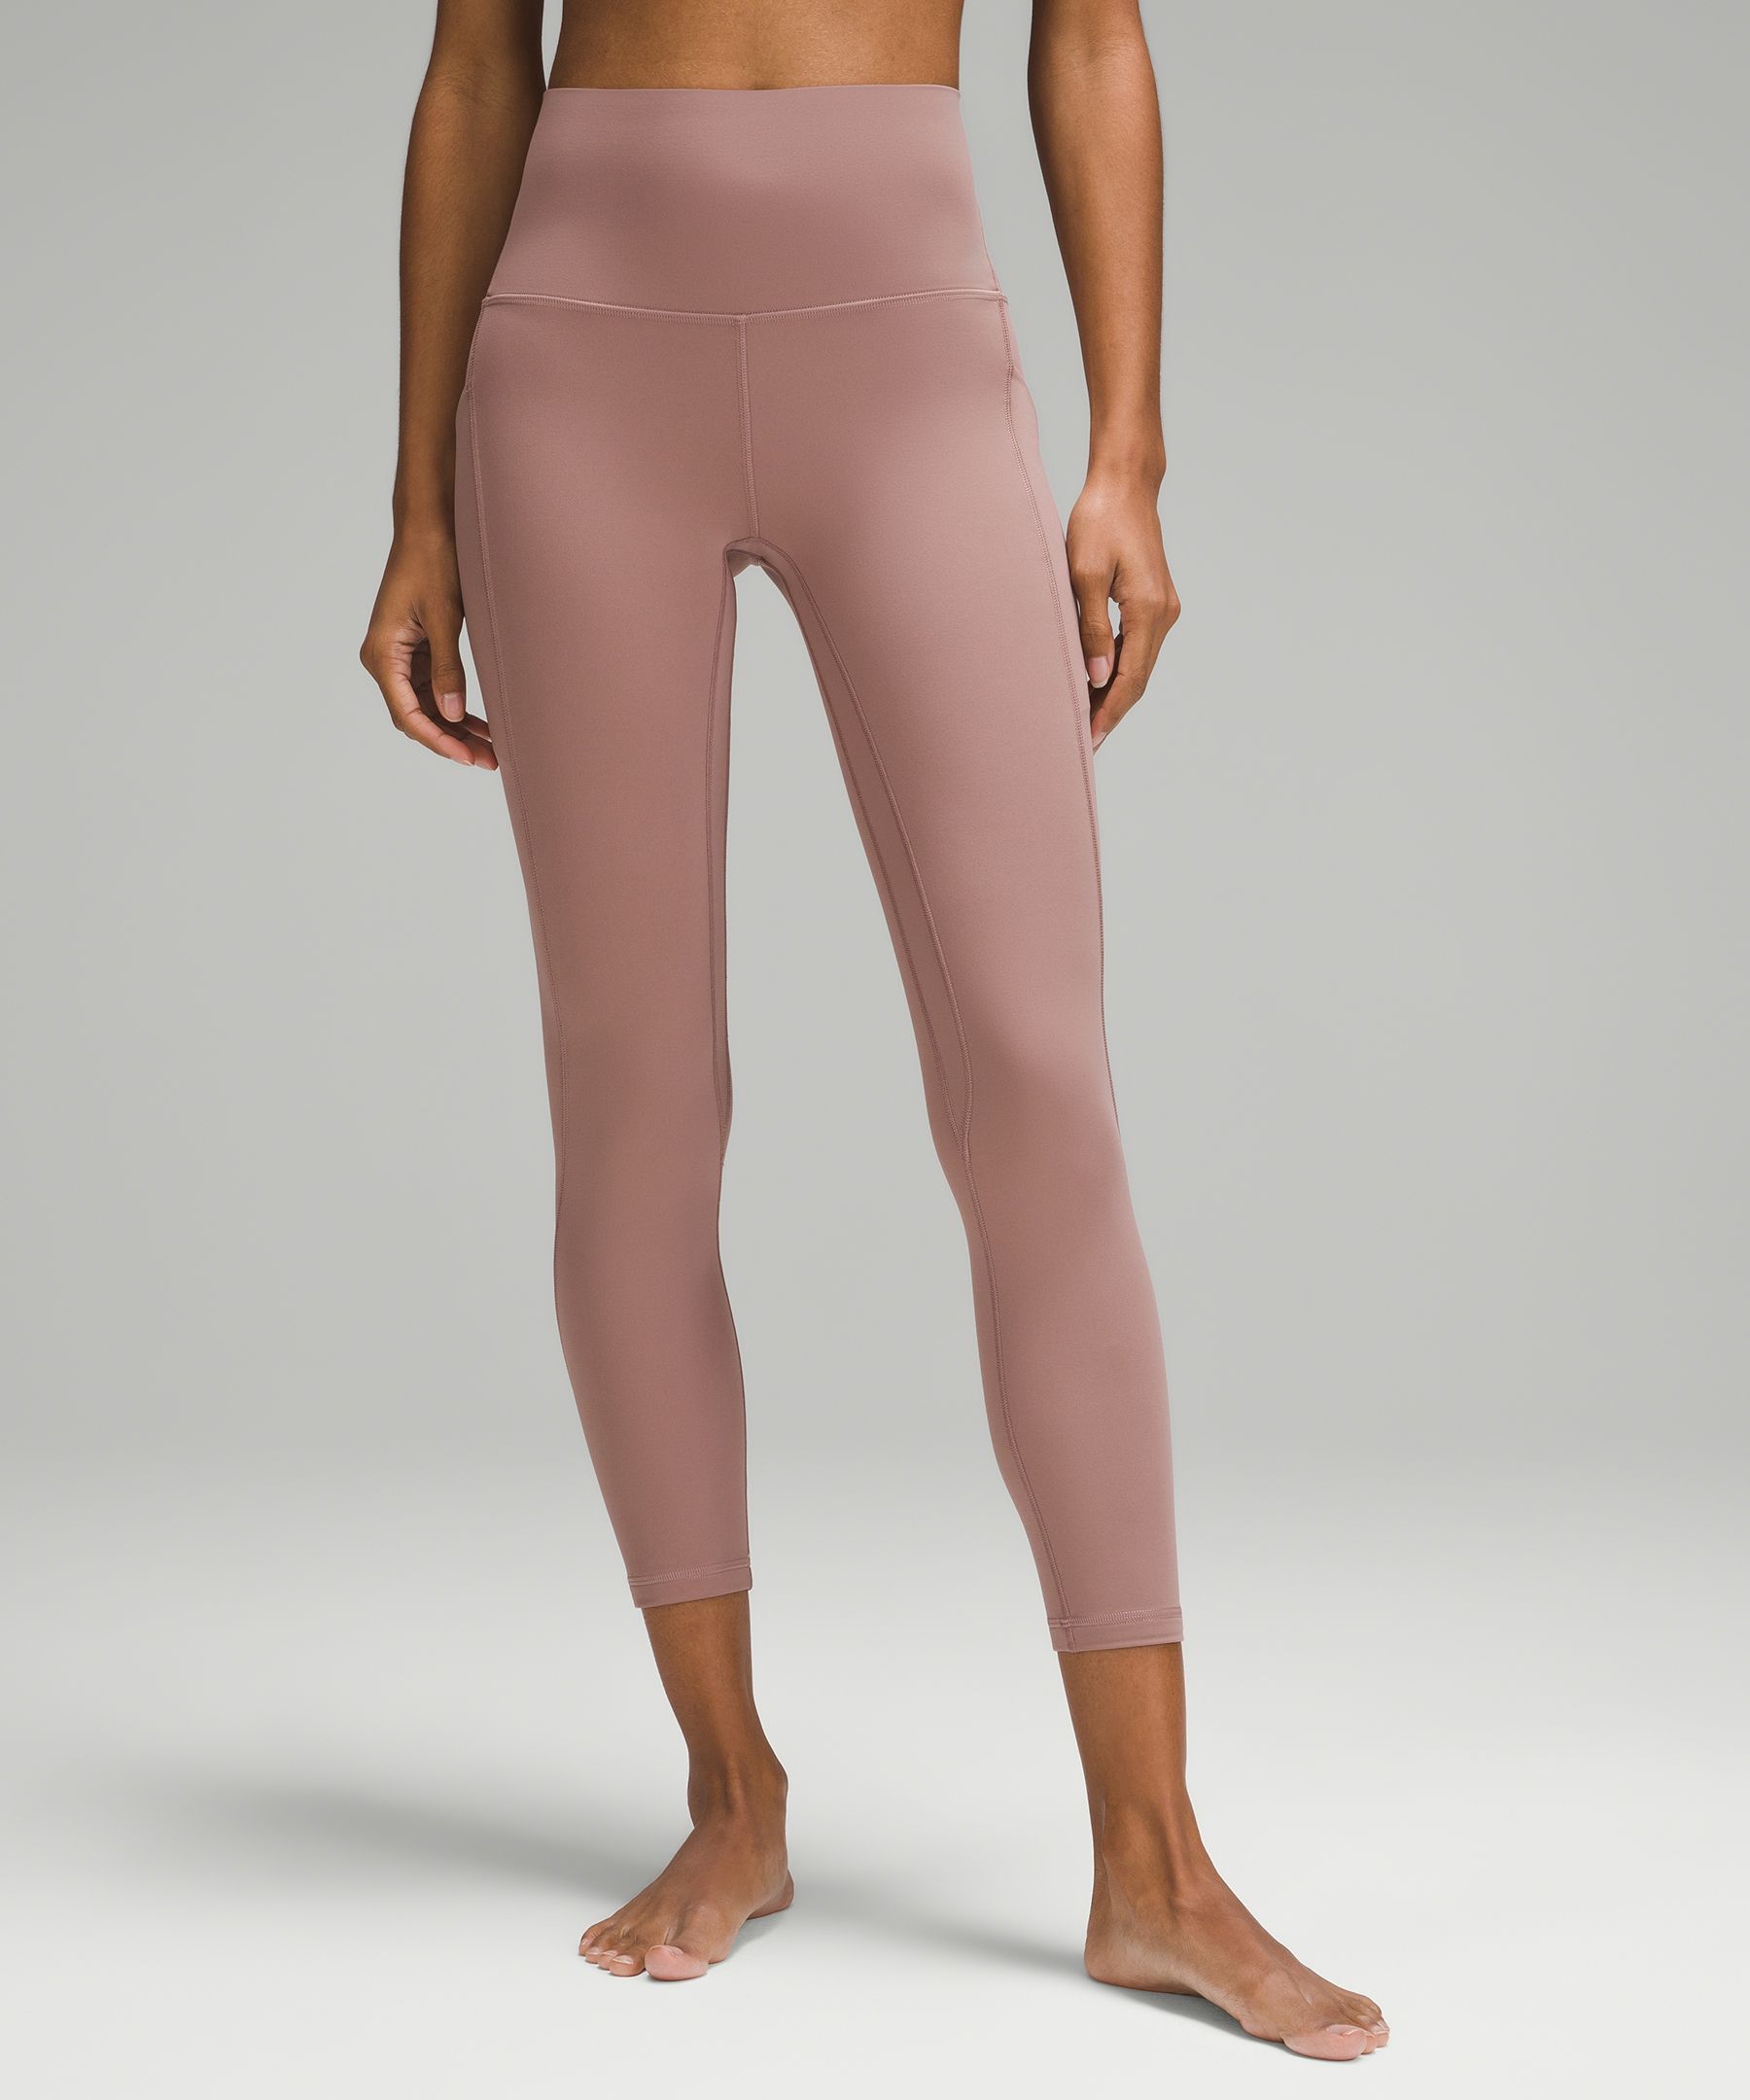 Best Lulu Align Yoga Pants 25′ ′ Inseam High Waist Women Workout